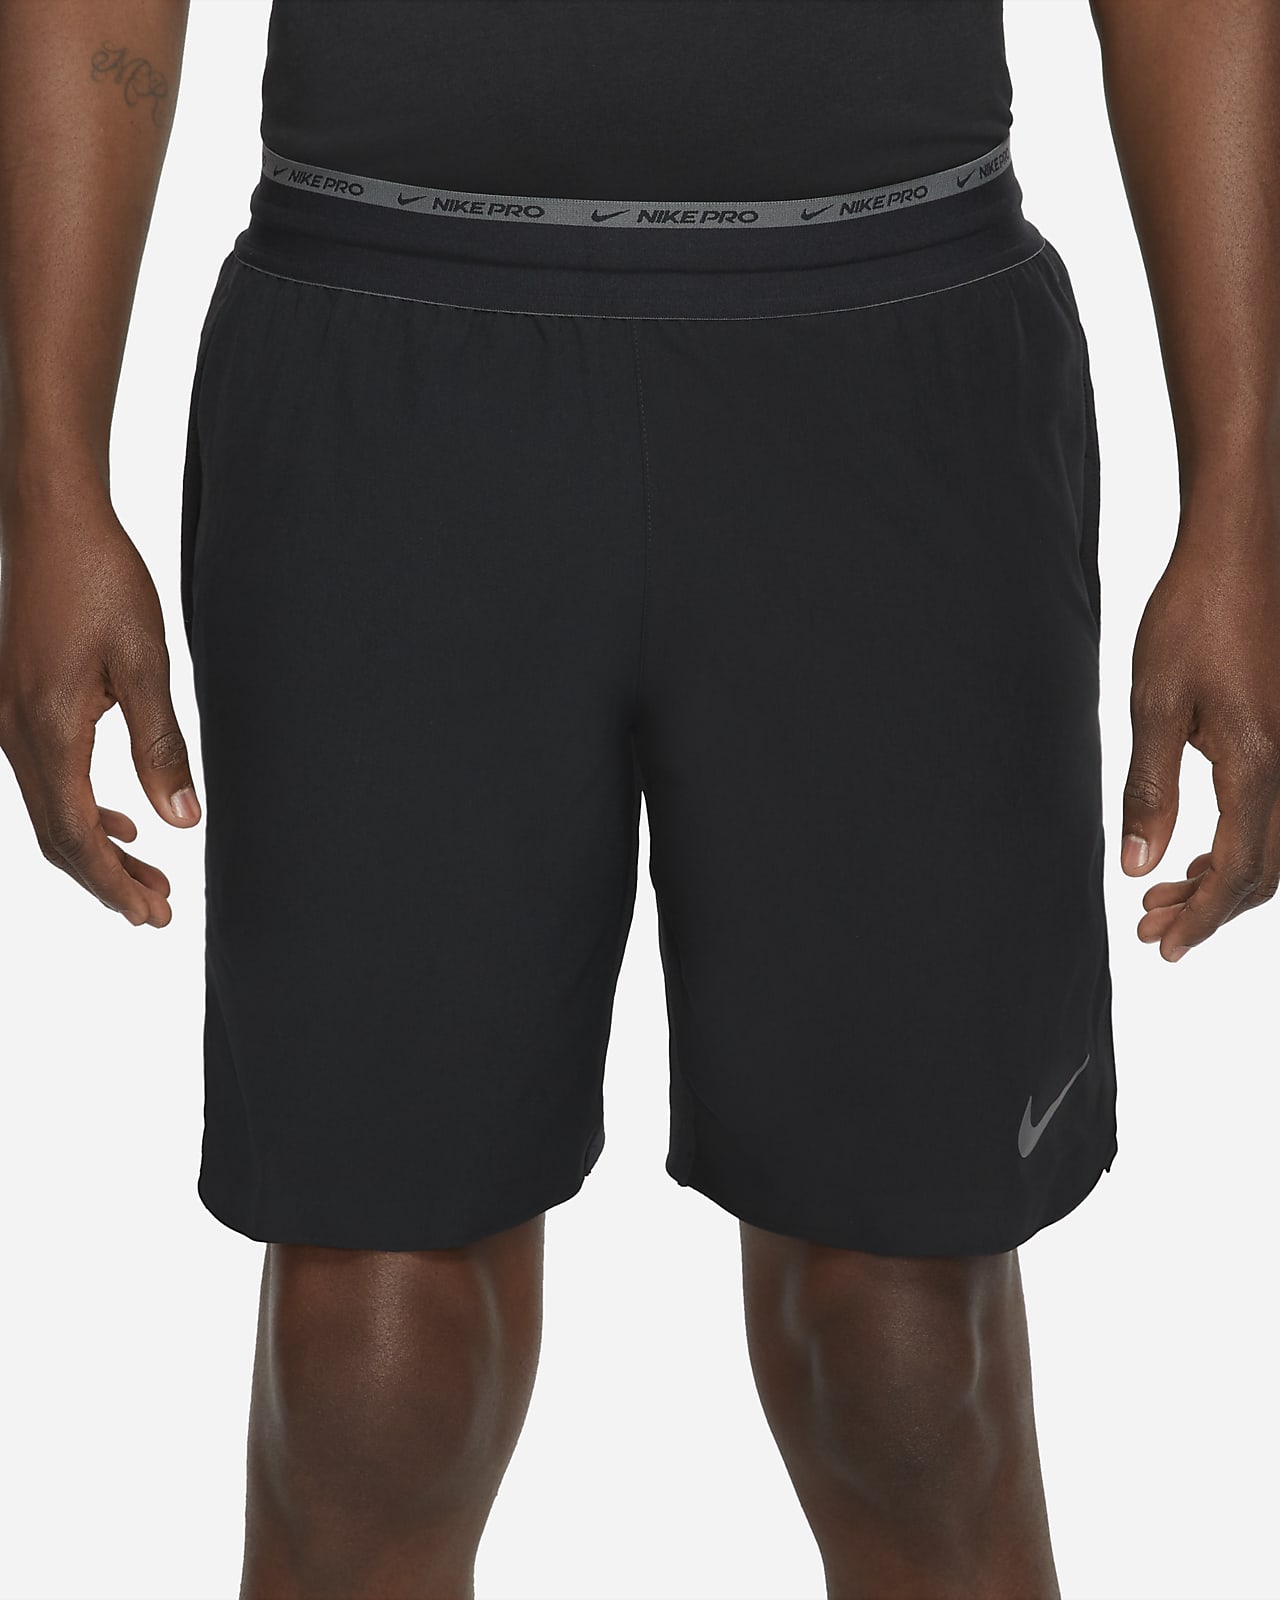 césped todo lo mejor Humillar Shorts de entrenamiento sin forro de 20 cm para hombre Nike Dri-FIT Flex  Rep Pro Collection. Nike.com